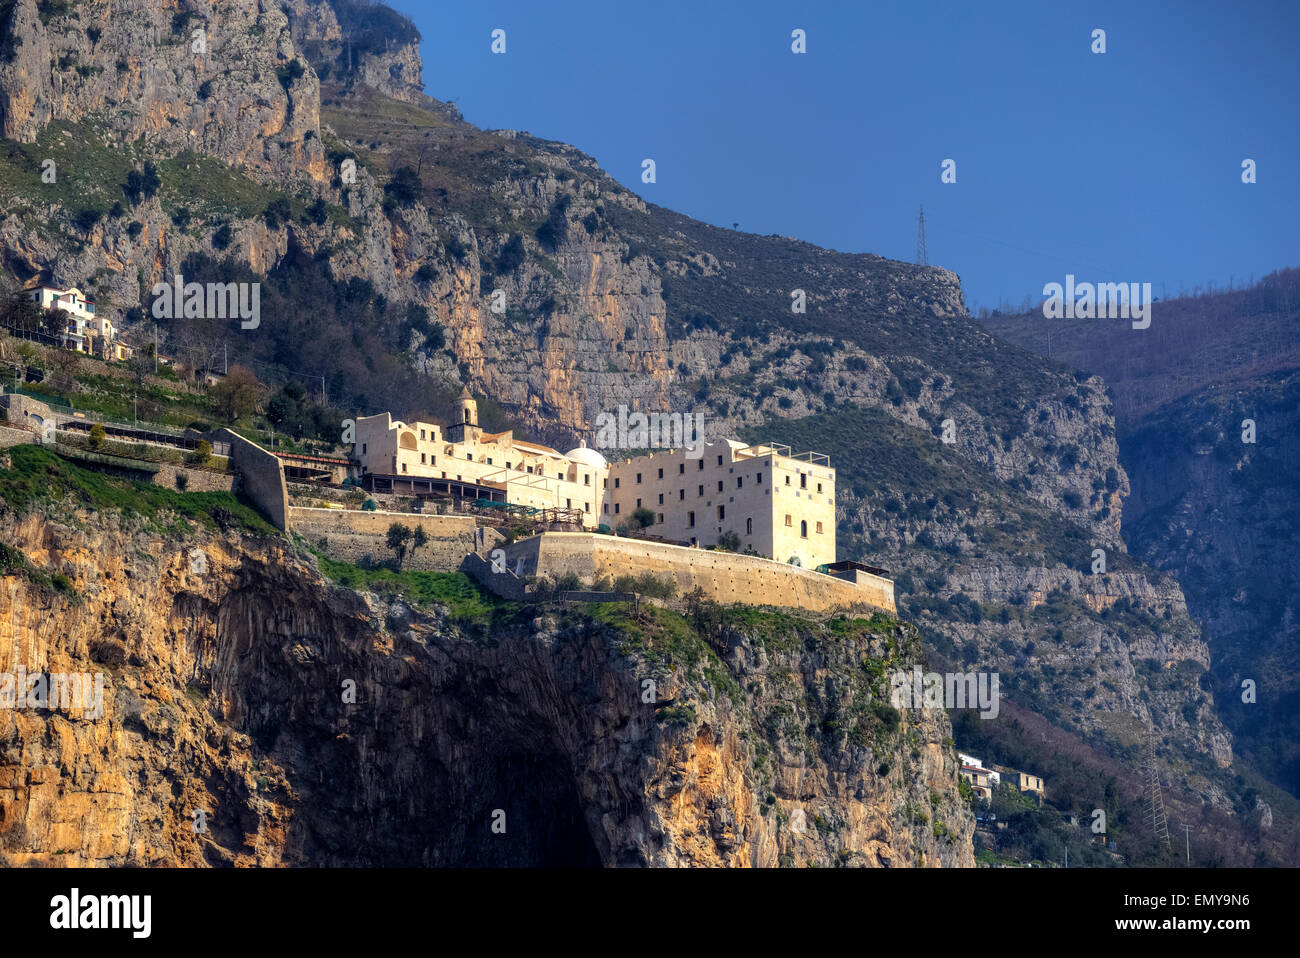 Monastero de Santa Rosa, Conca dei Marini, Amalfi, Campania, Italia Foto de stock